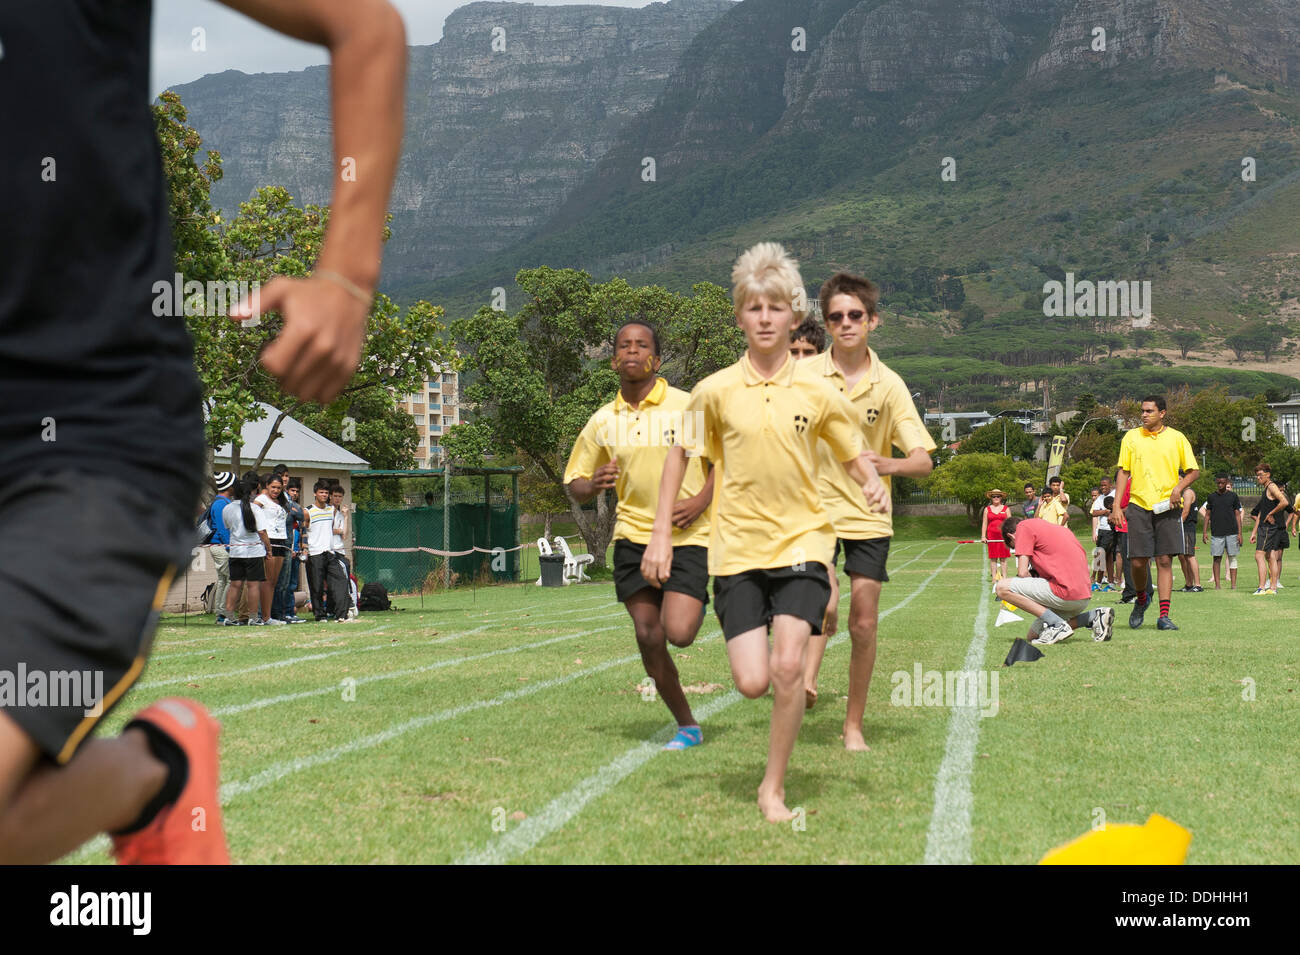 El Athletic los niños tomar parte en una competición en Saint George's School, Ciudad del Cabo, Sudáfrica Foto de stock